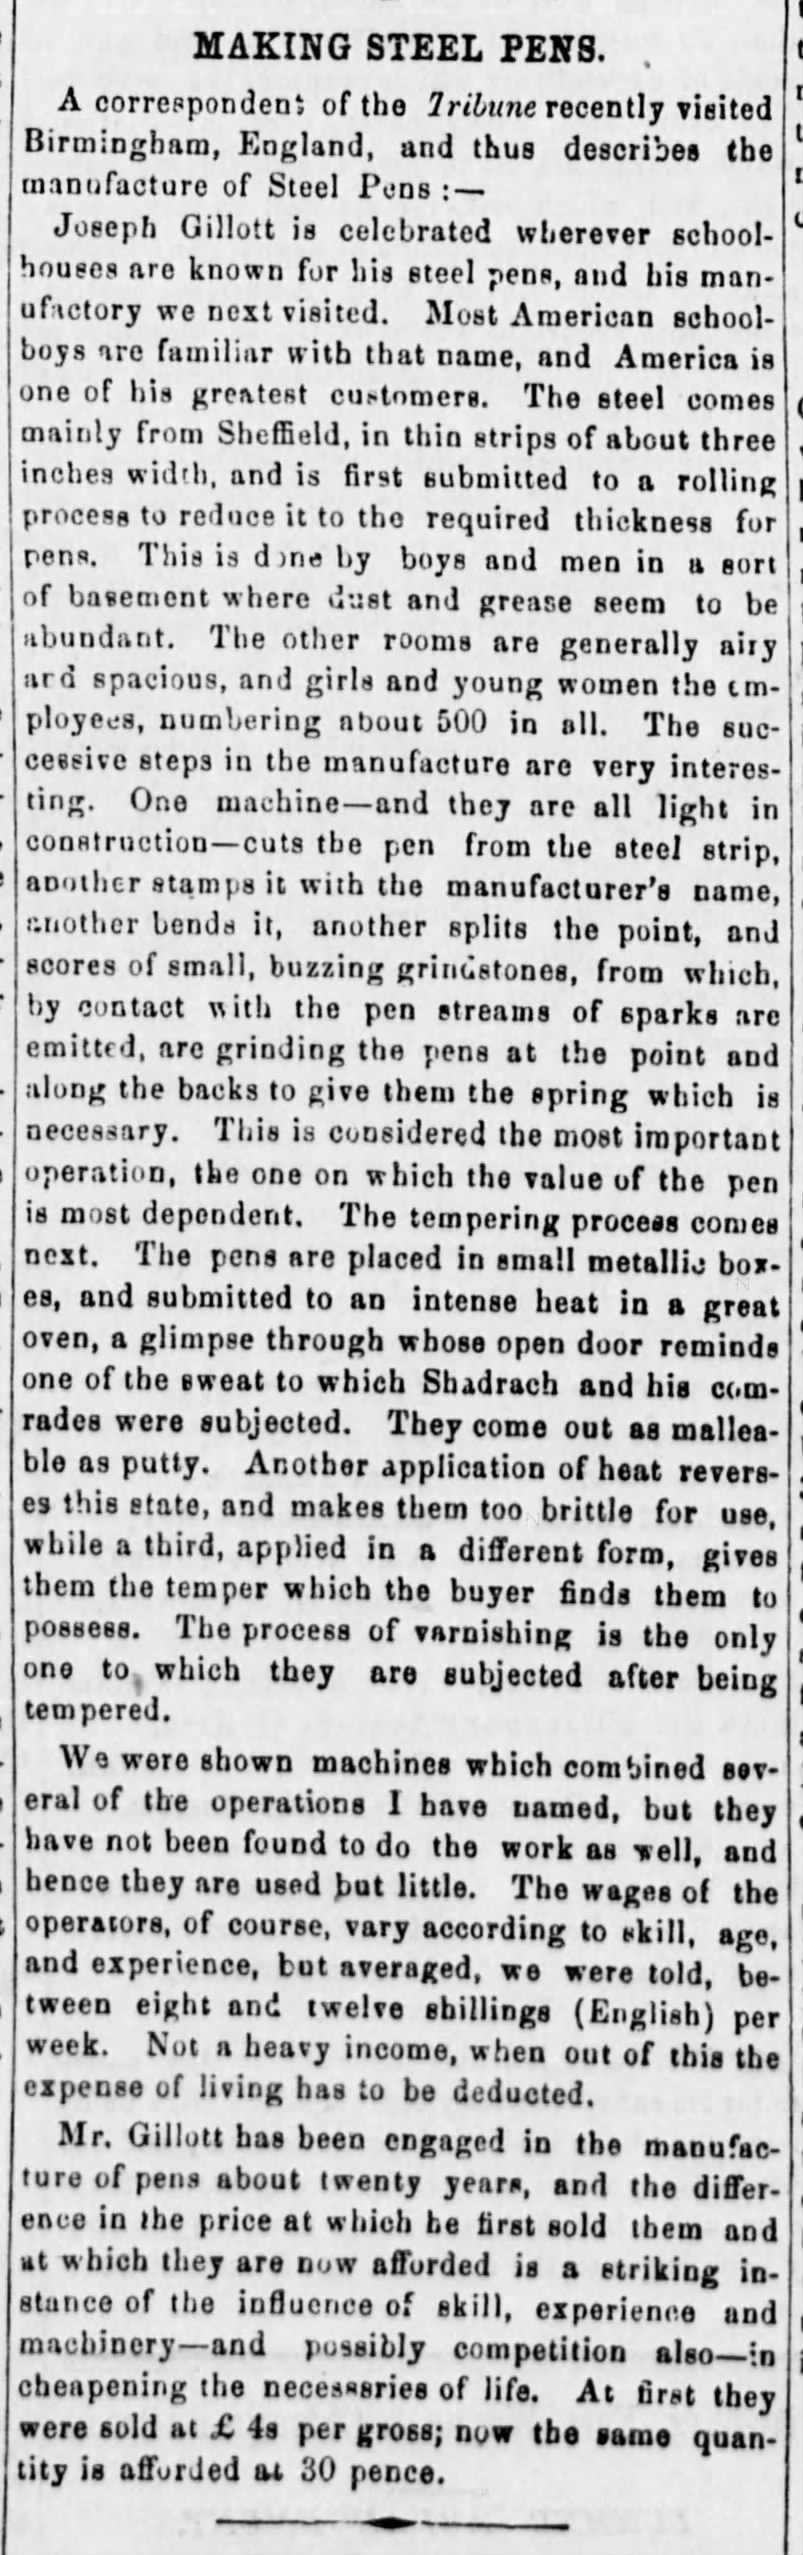 1859 - Making Steel Pens - Gillott, from Tribune